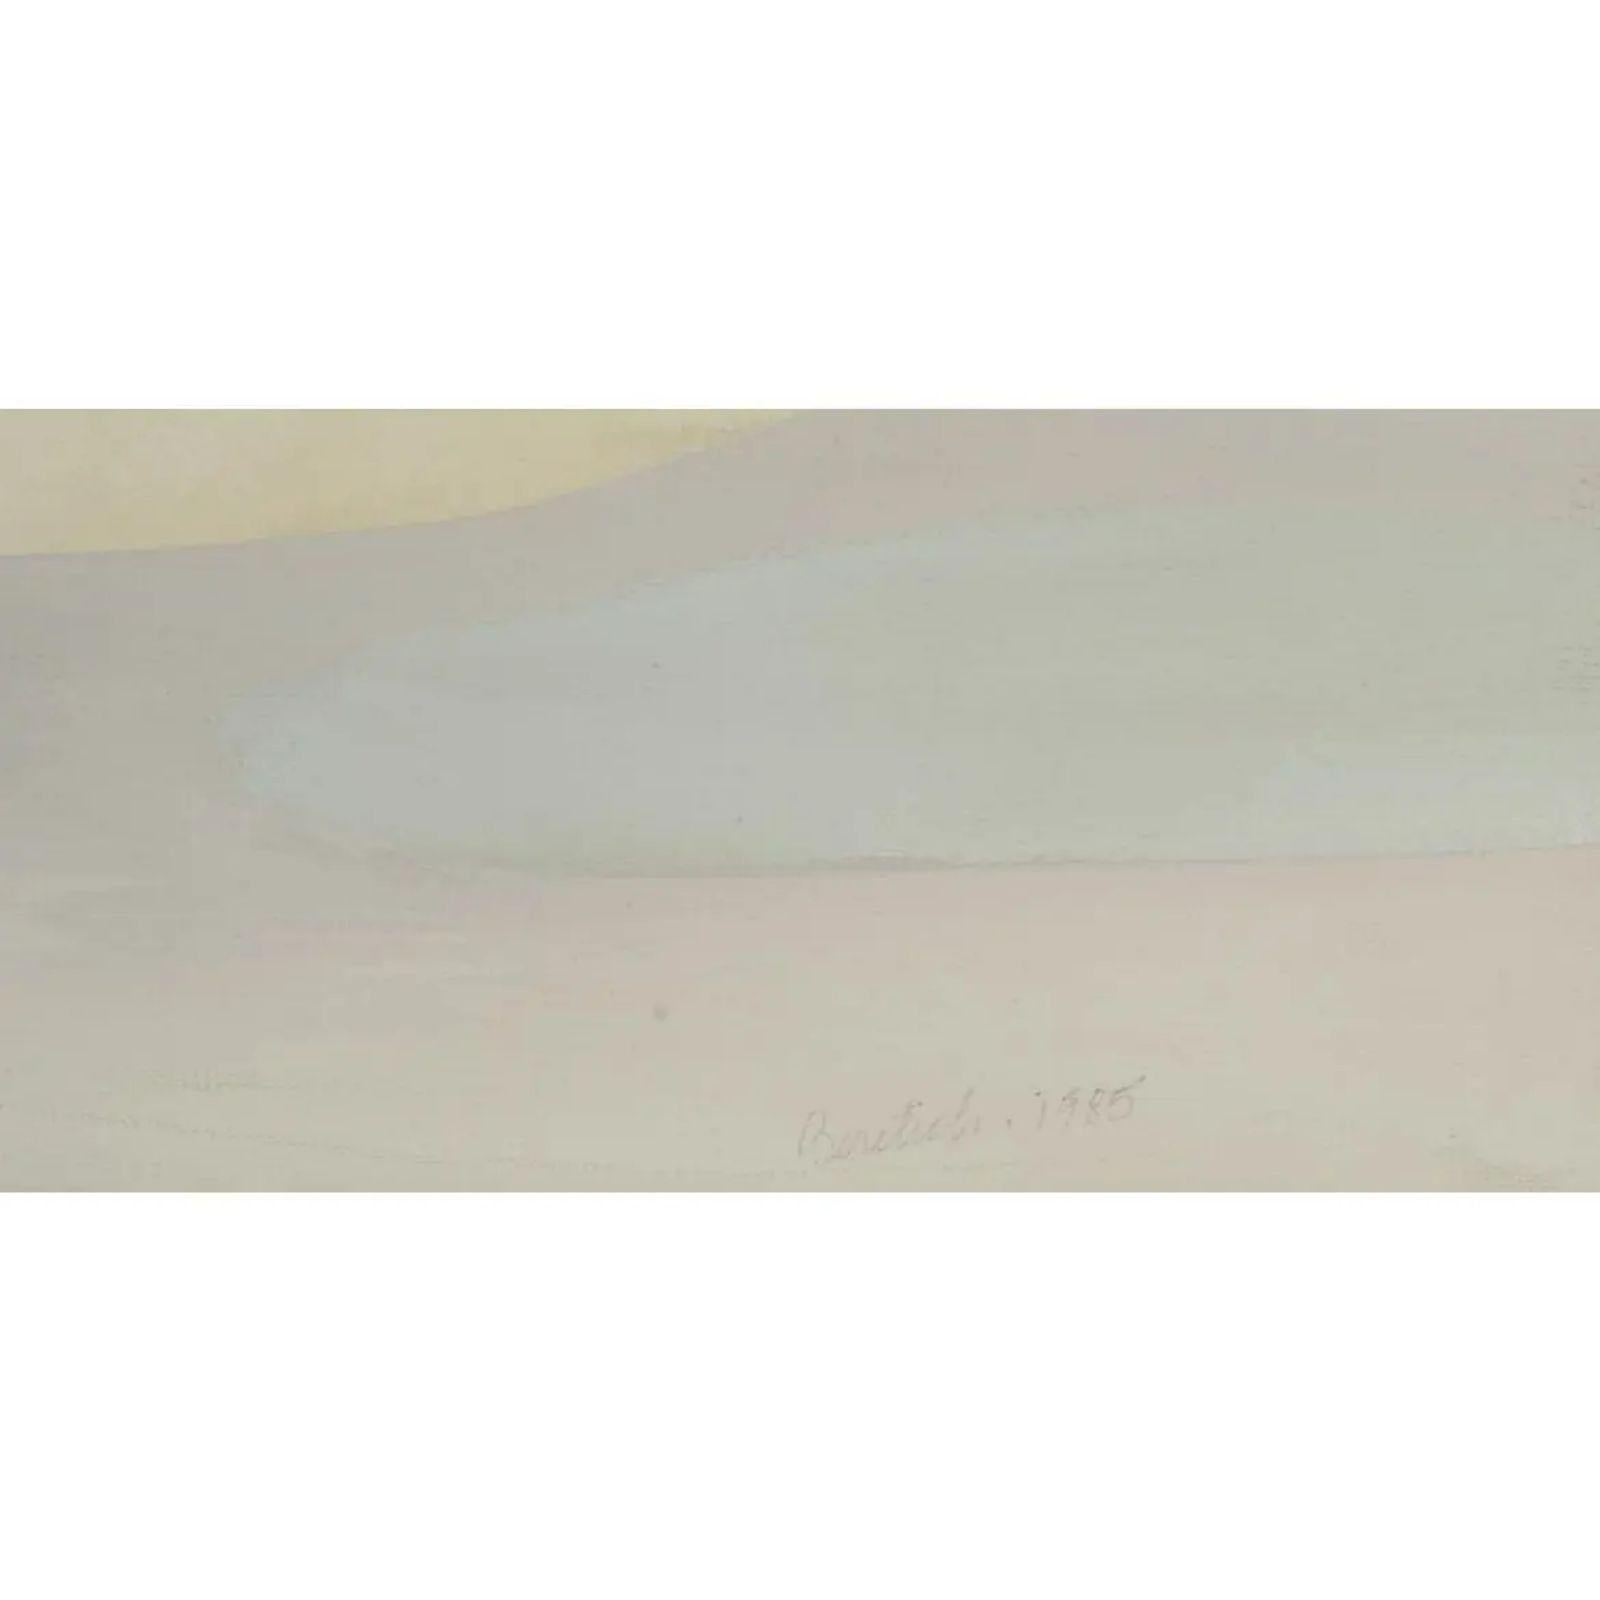 Peinture abstraite de Barbara Beretich (1936-2018). Elle est intitulée Silver Wide et représente un paysage abstrait modéré. Il est signé par l'artiste et a été peint en 1985.

Informations complémentaires : 
Matériaux : Toile, peinture à